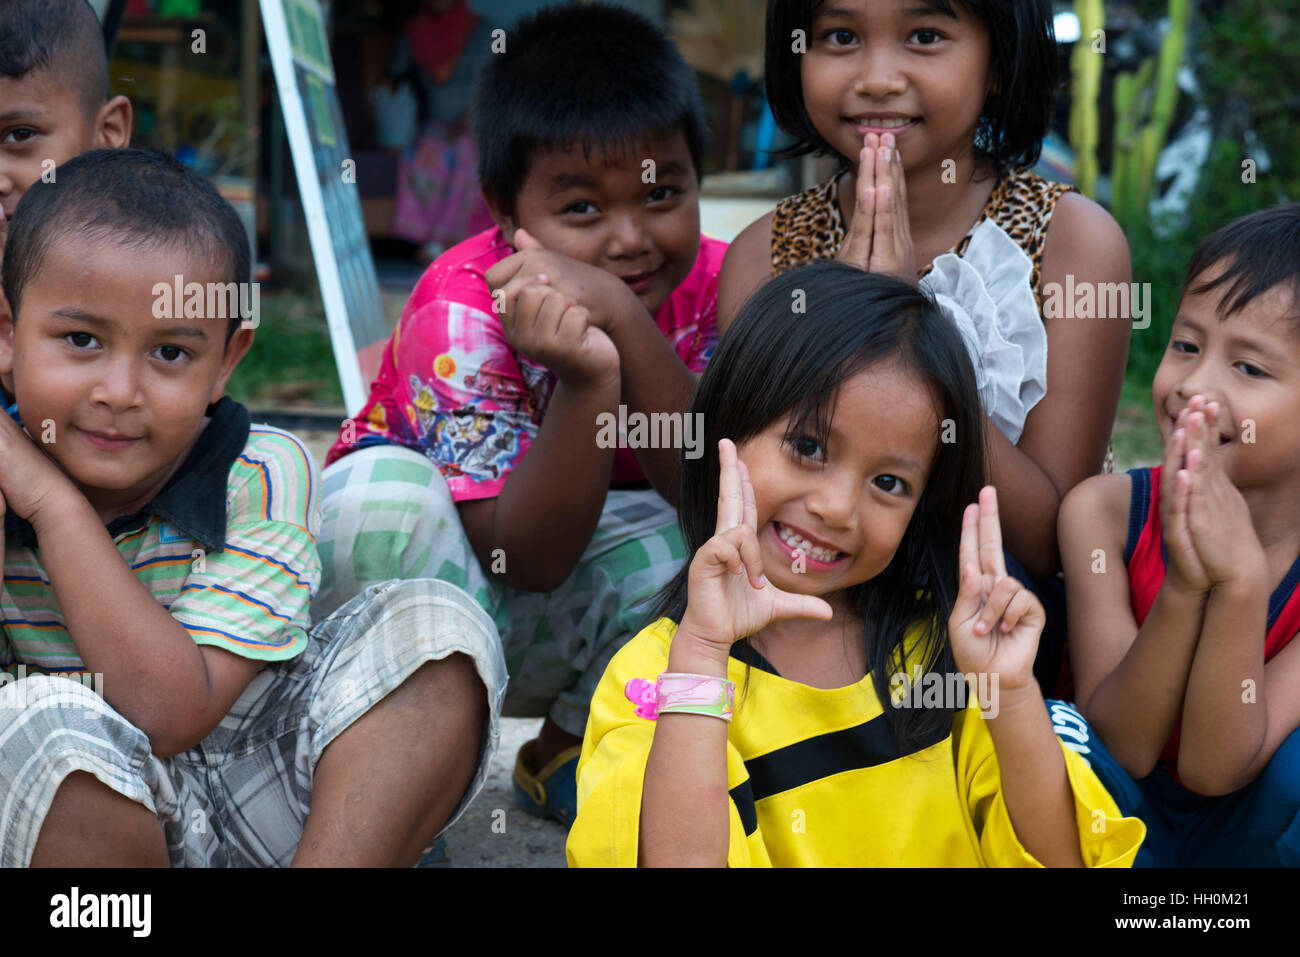 Kinder, die Spaß in Koh Lanta. Krabi. Thailand. Asien. Ko Lanta ist technisch Ko Lanta Yai, die größte von 52 Inseln in einem Archipel Prot genannt. Stockfoto